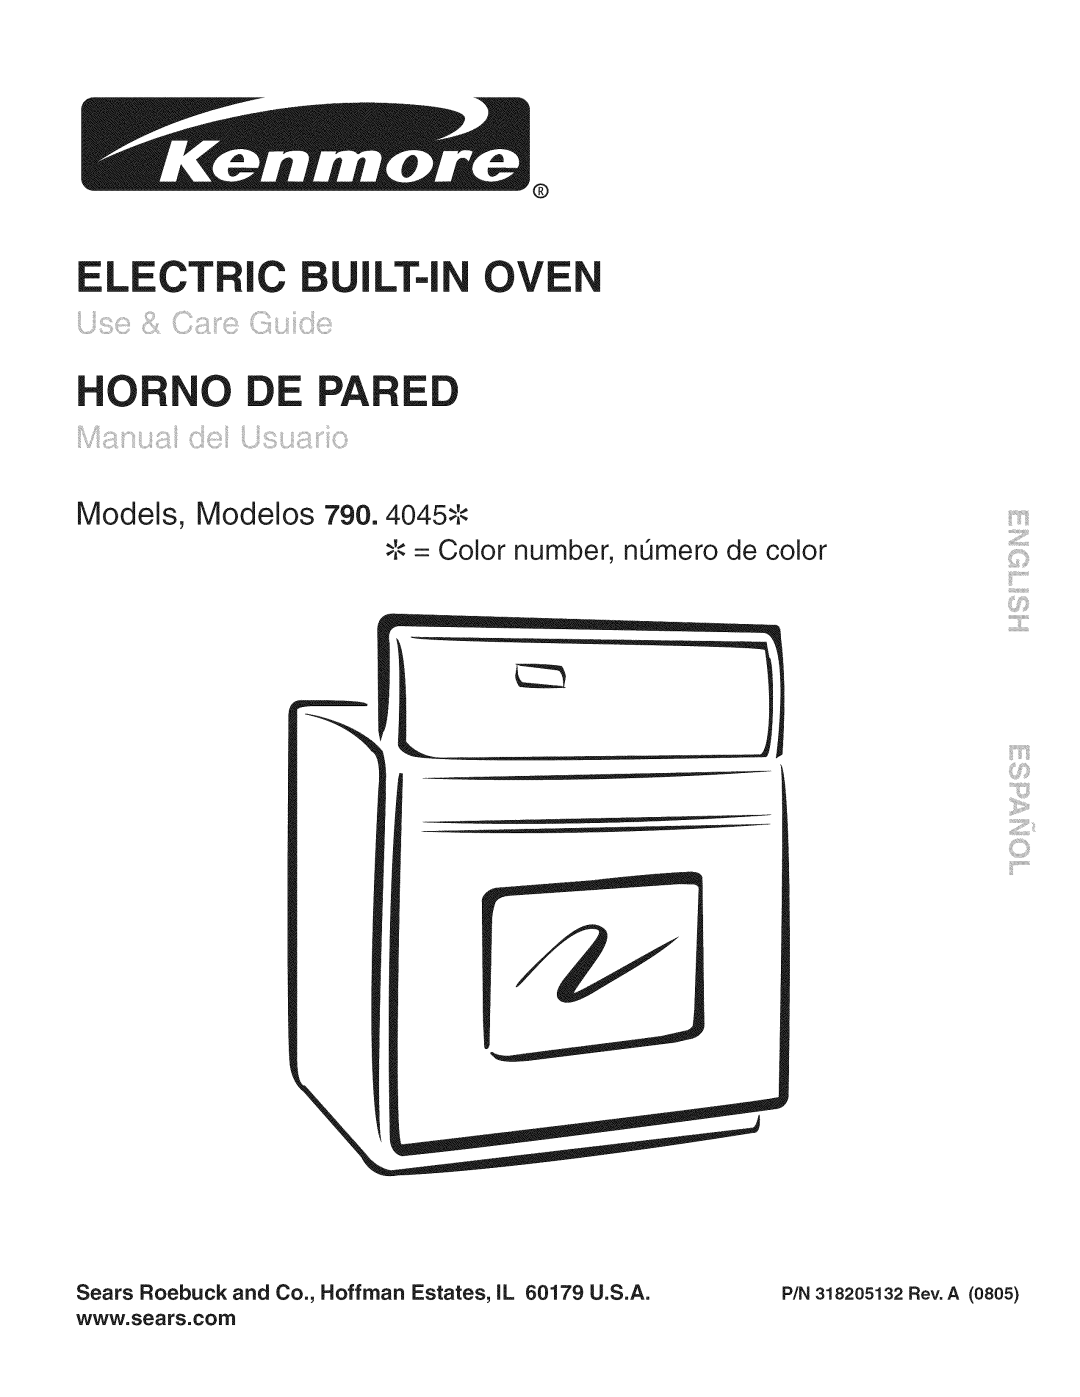 Kenmore manual ELECTRIC Ui LT-I OVE HORNO, Models, Modelos 790. 4045_, Color number, nL mero de color 